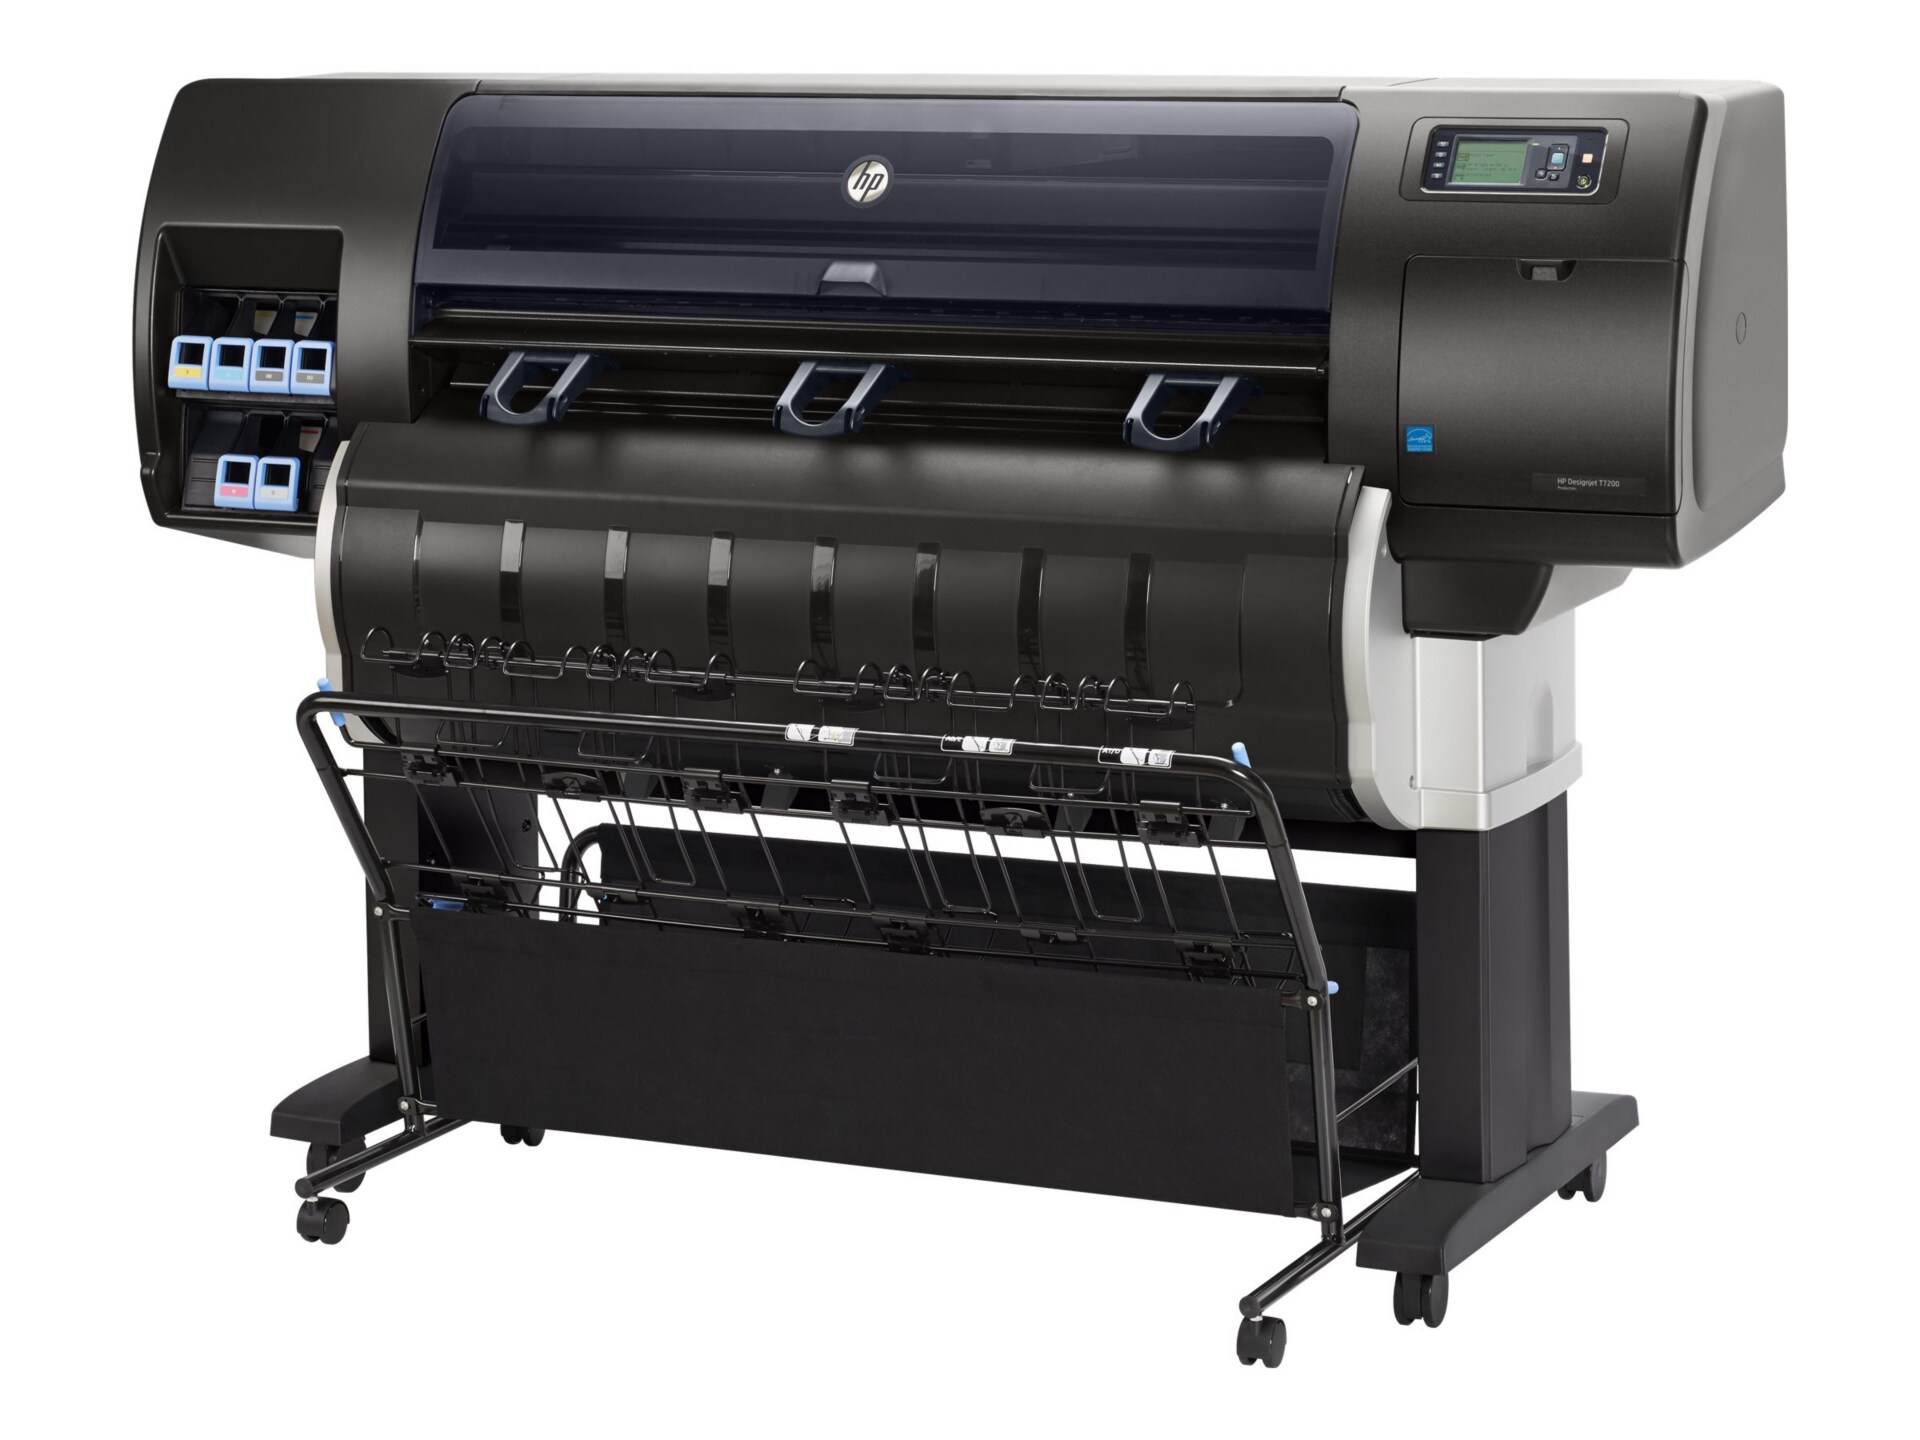 HP DesignJet T7200 Production Printer - large-format printer - color - ink-